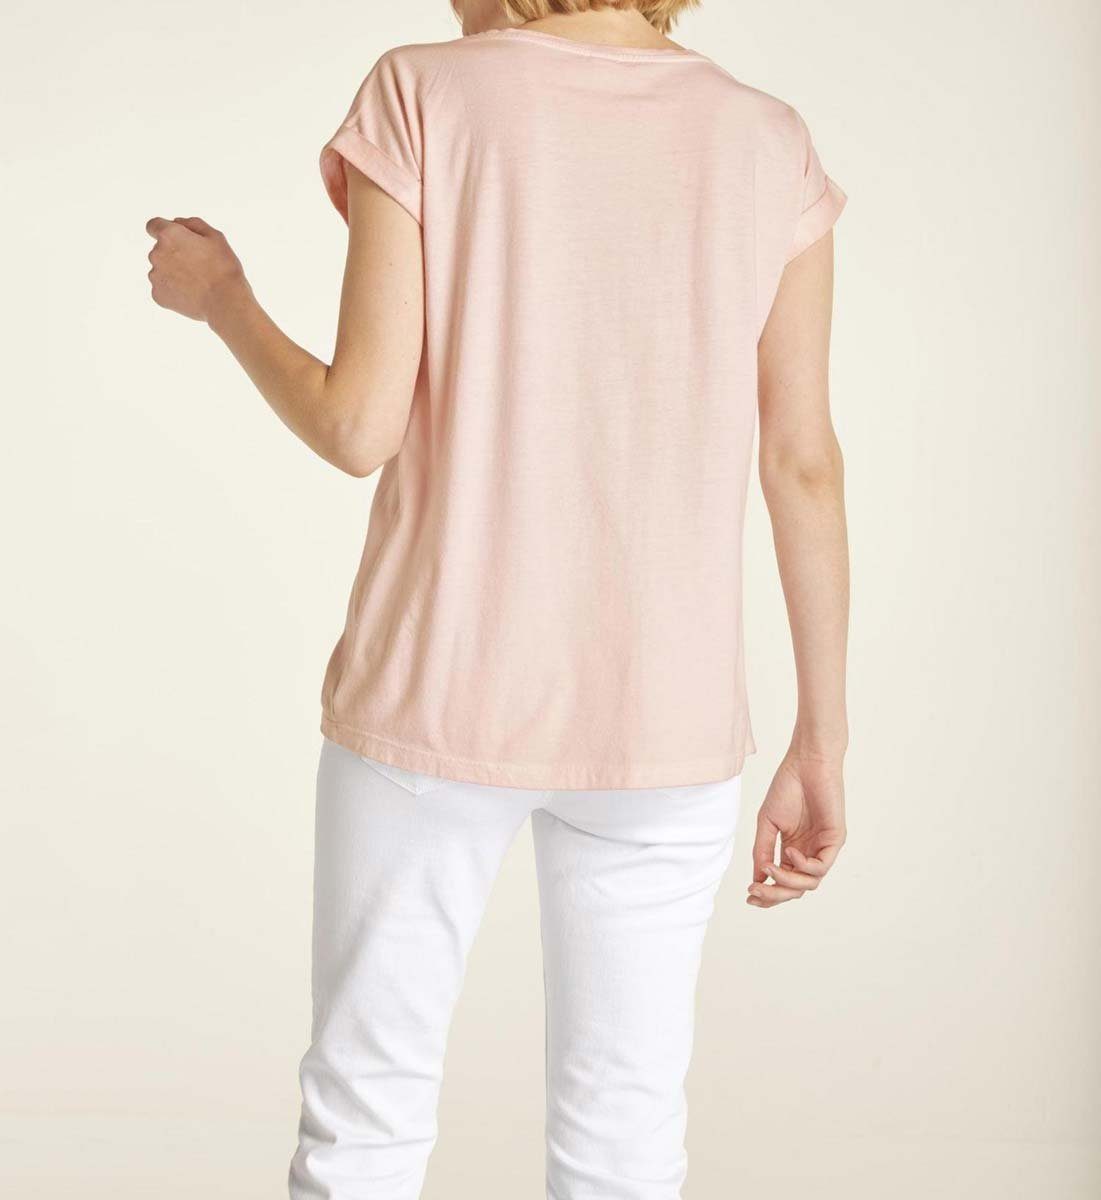 T-Shirt Strass, heine Damen Jerseyshirt mit Heine rosé